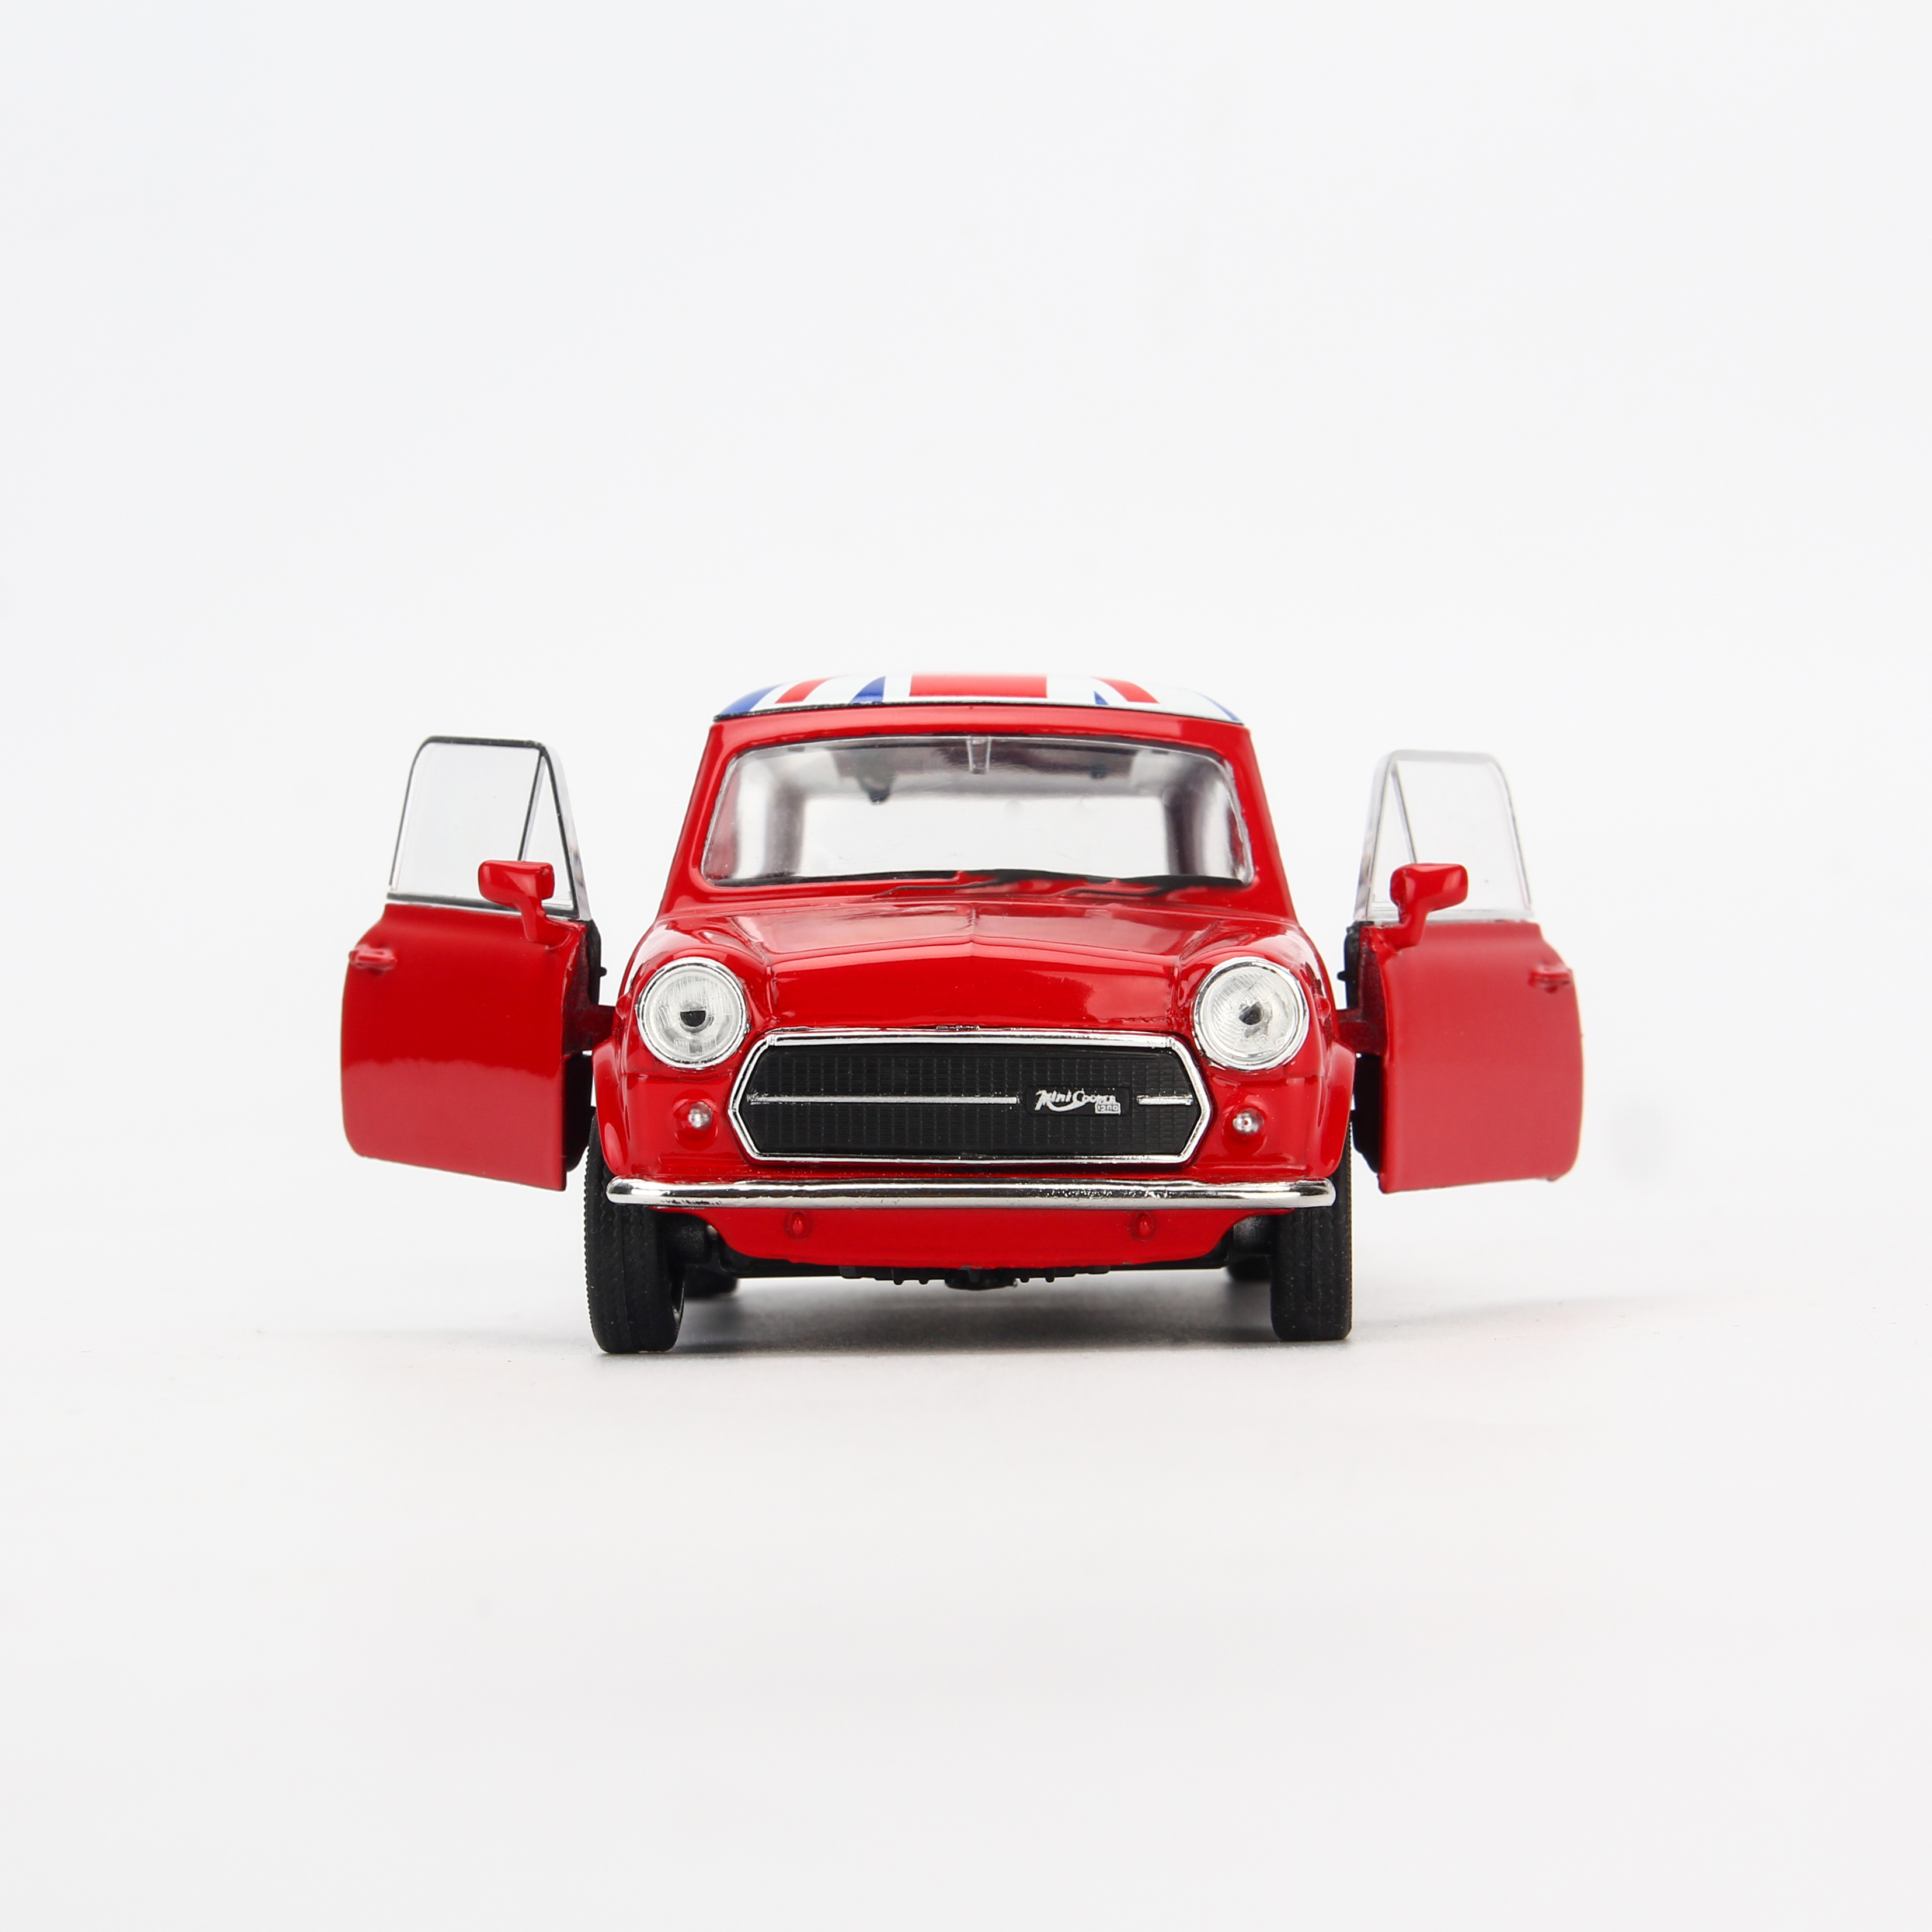 Mô hình xe Mini Cooper 1300 British Version 1:36 Welly - 43609